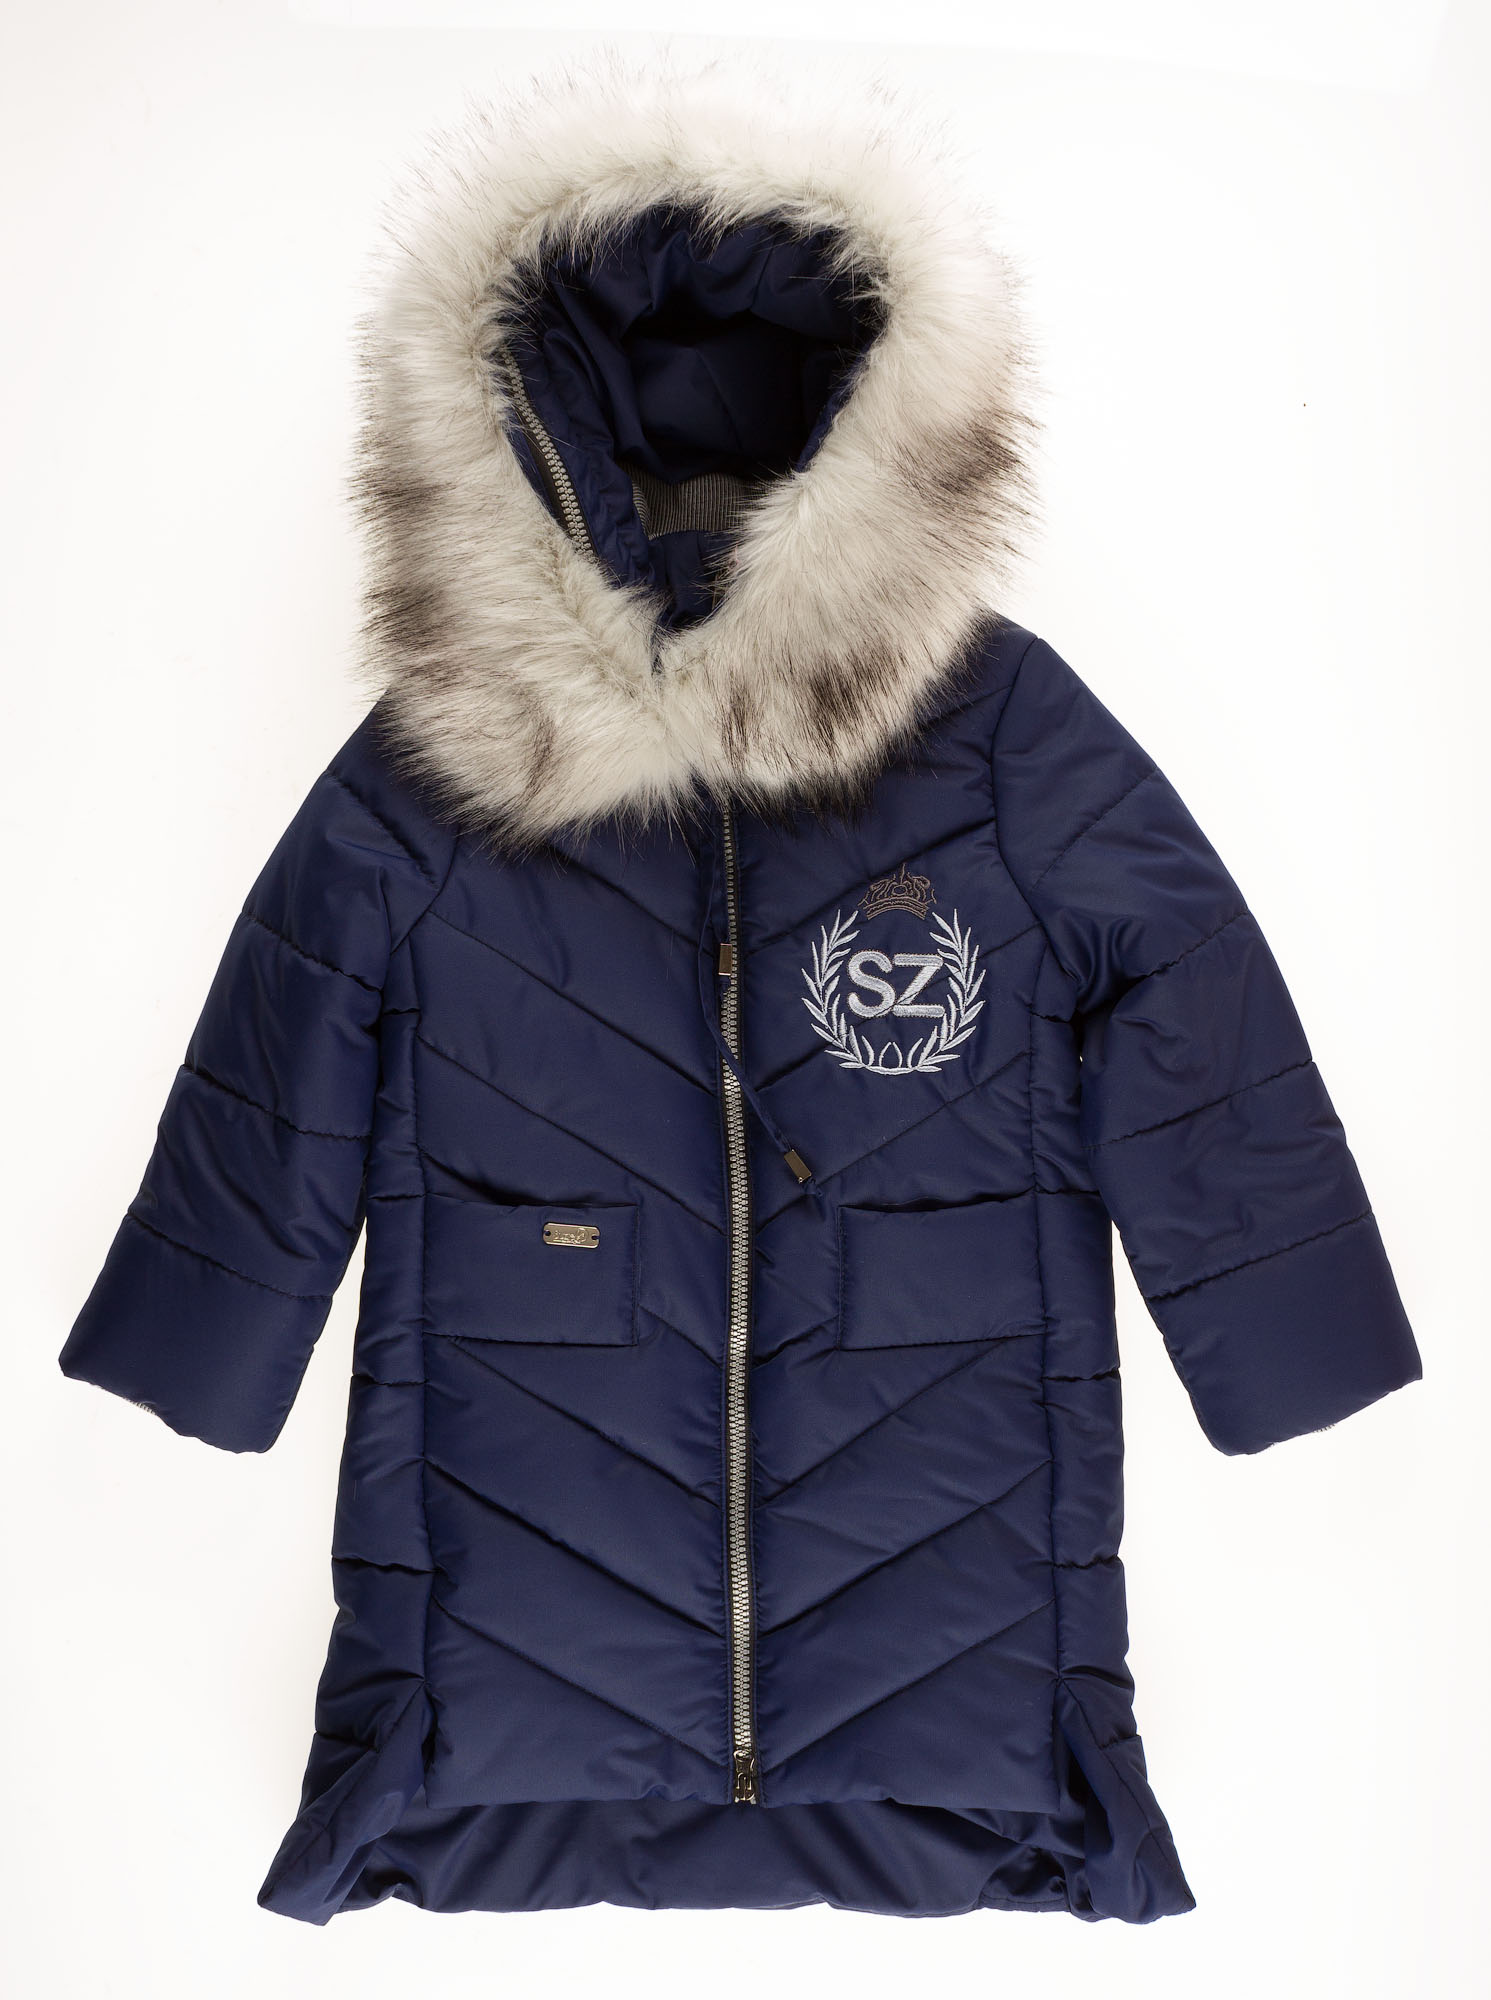 Куртка-пальто зимова для дівчинки SUZIE Береніс темно-синя ПТ-36711 - купити